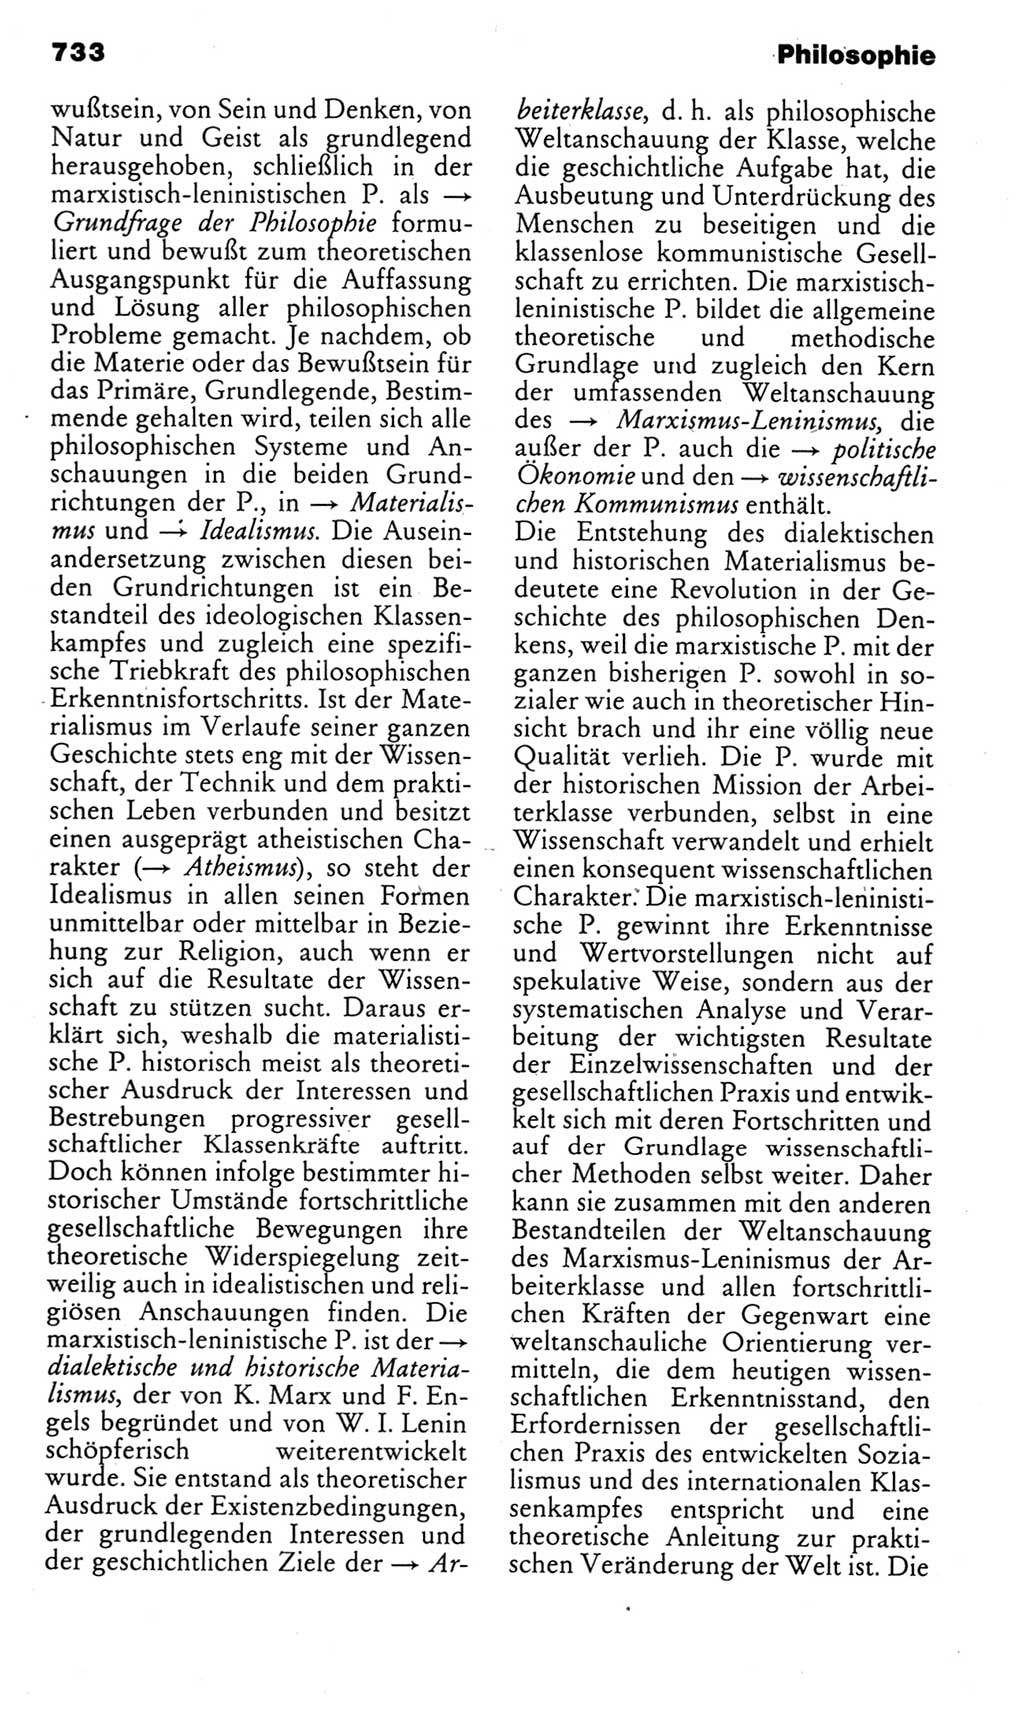 Kleines politisches Wörterbuch [Deutsche Demokratische Republik (DDR)] 1985, Seite 733 (Kl. pol. Wb. DDR 1985, S. 733)